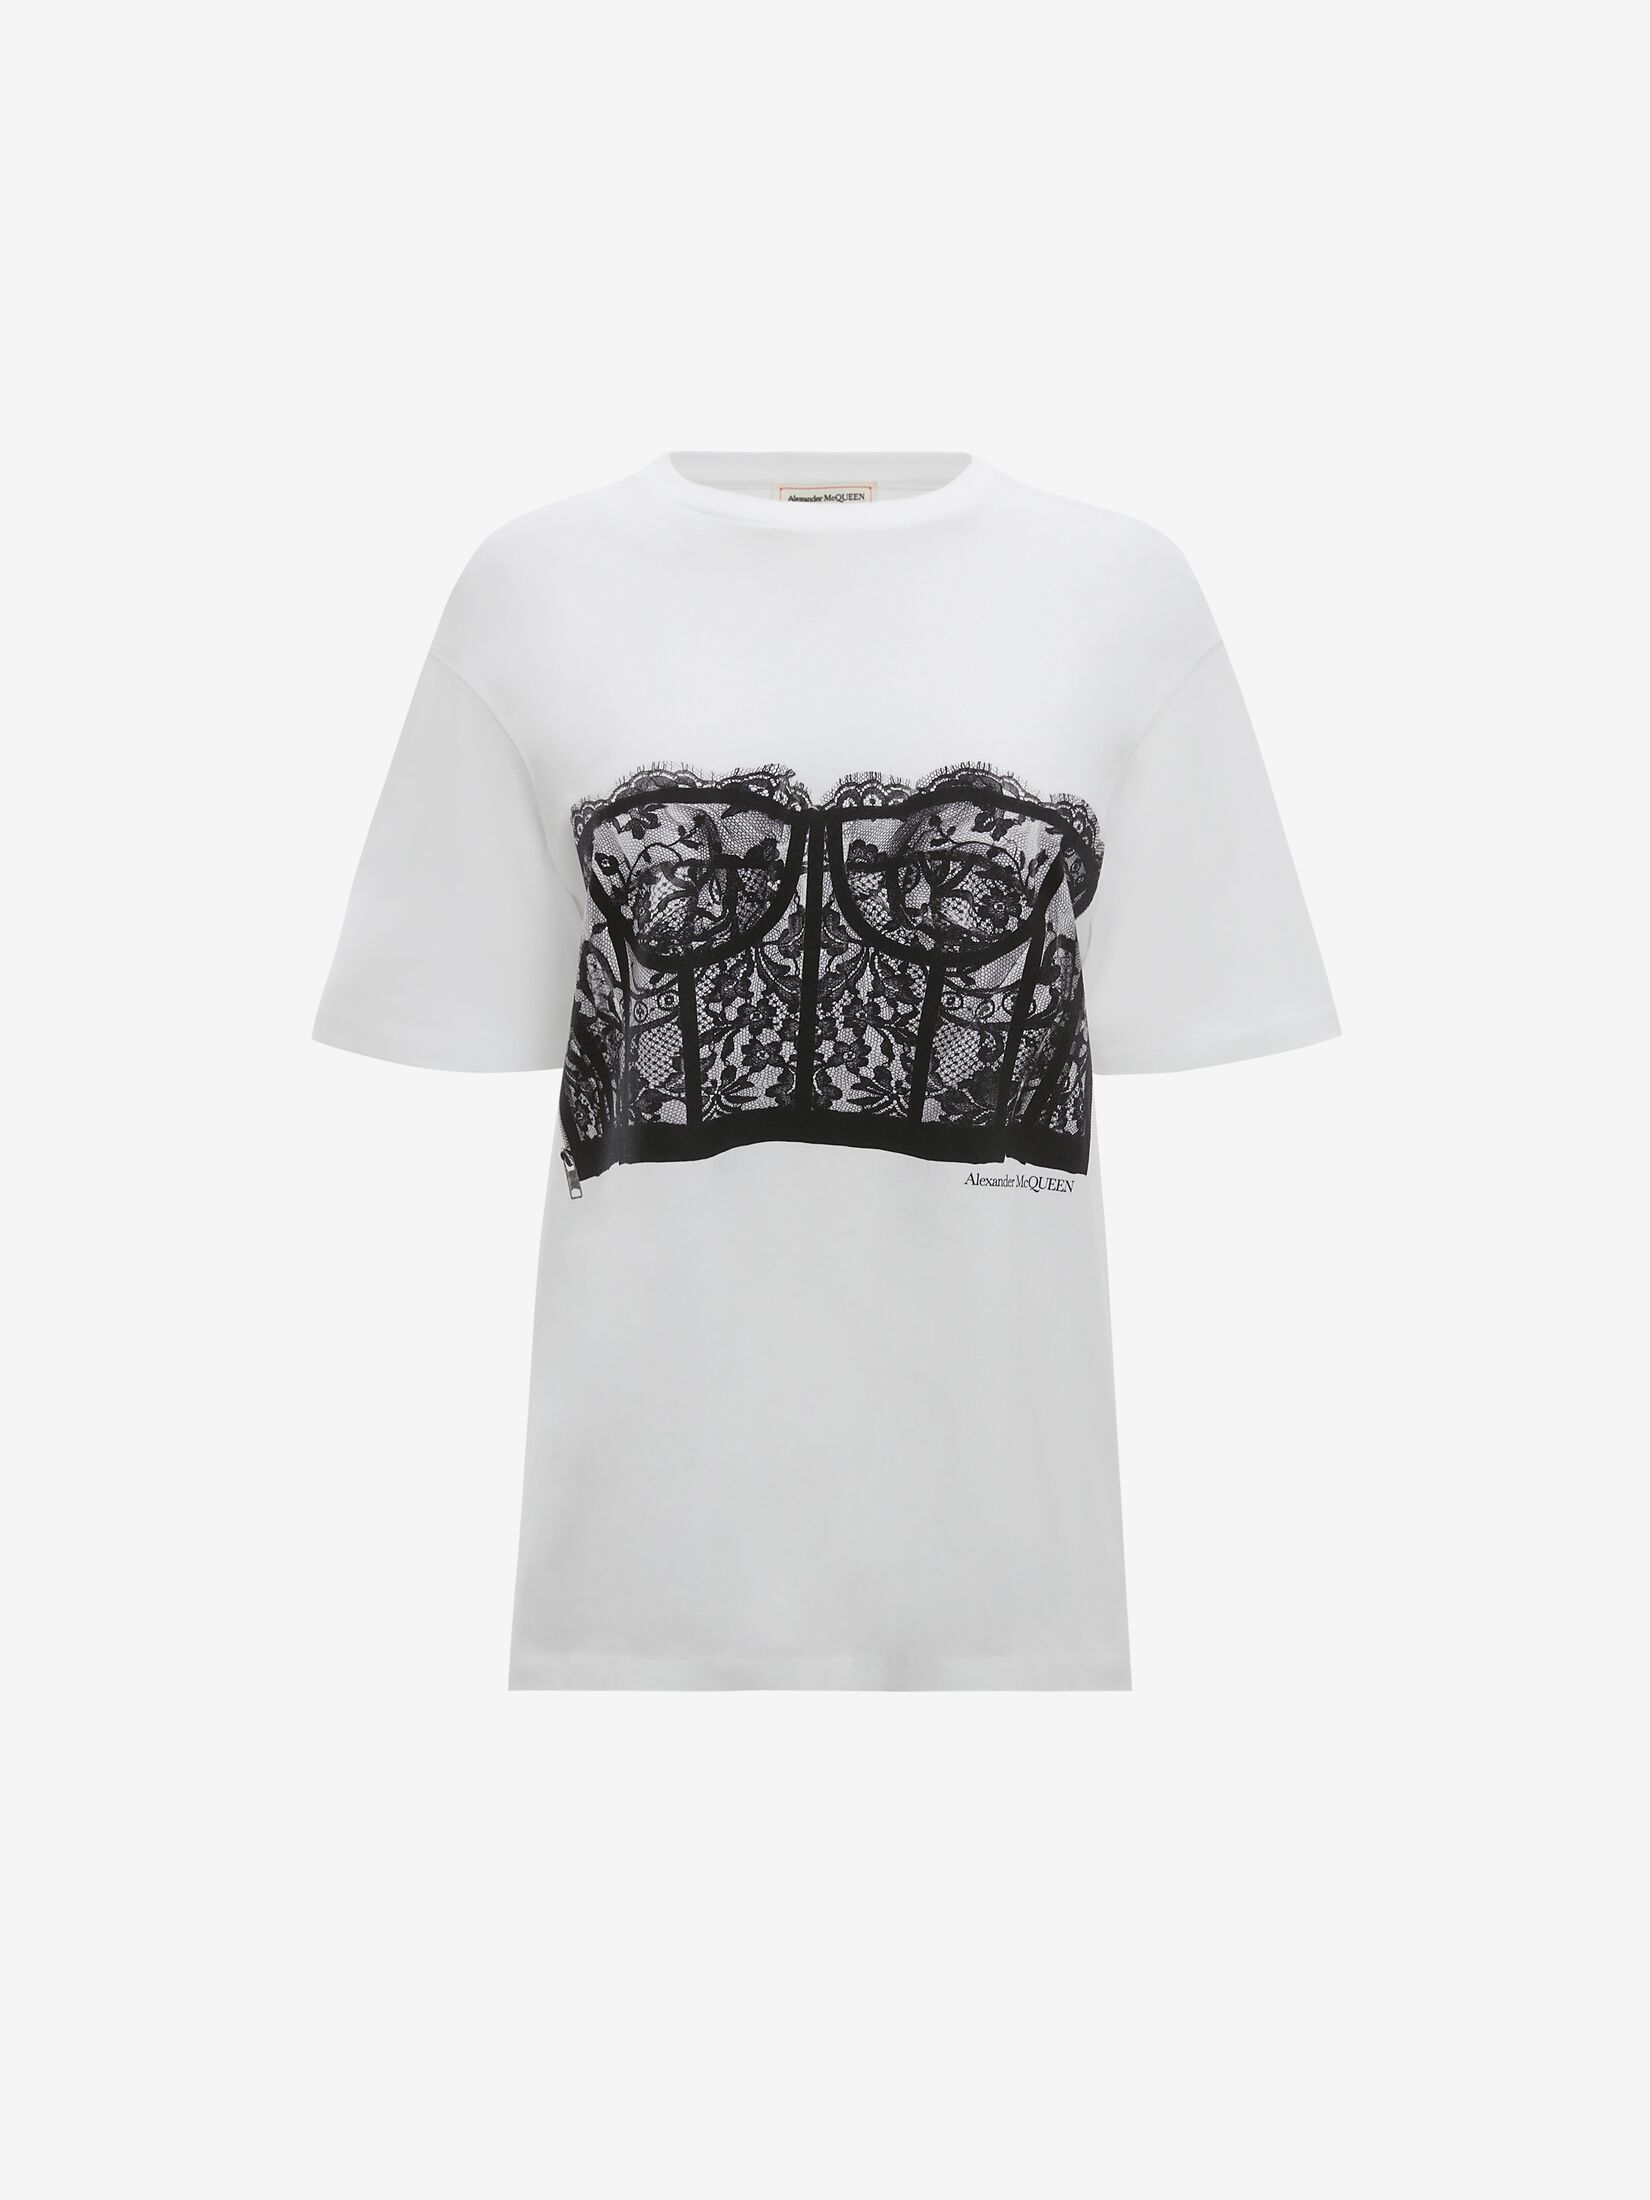 bra-print T-shirt, Alexander McQueen